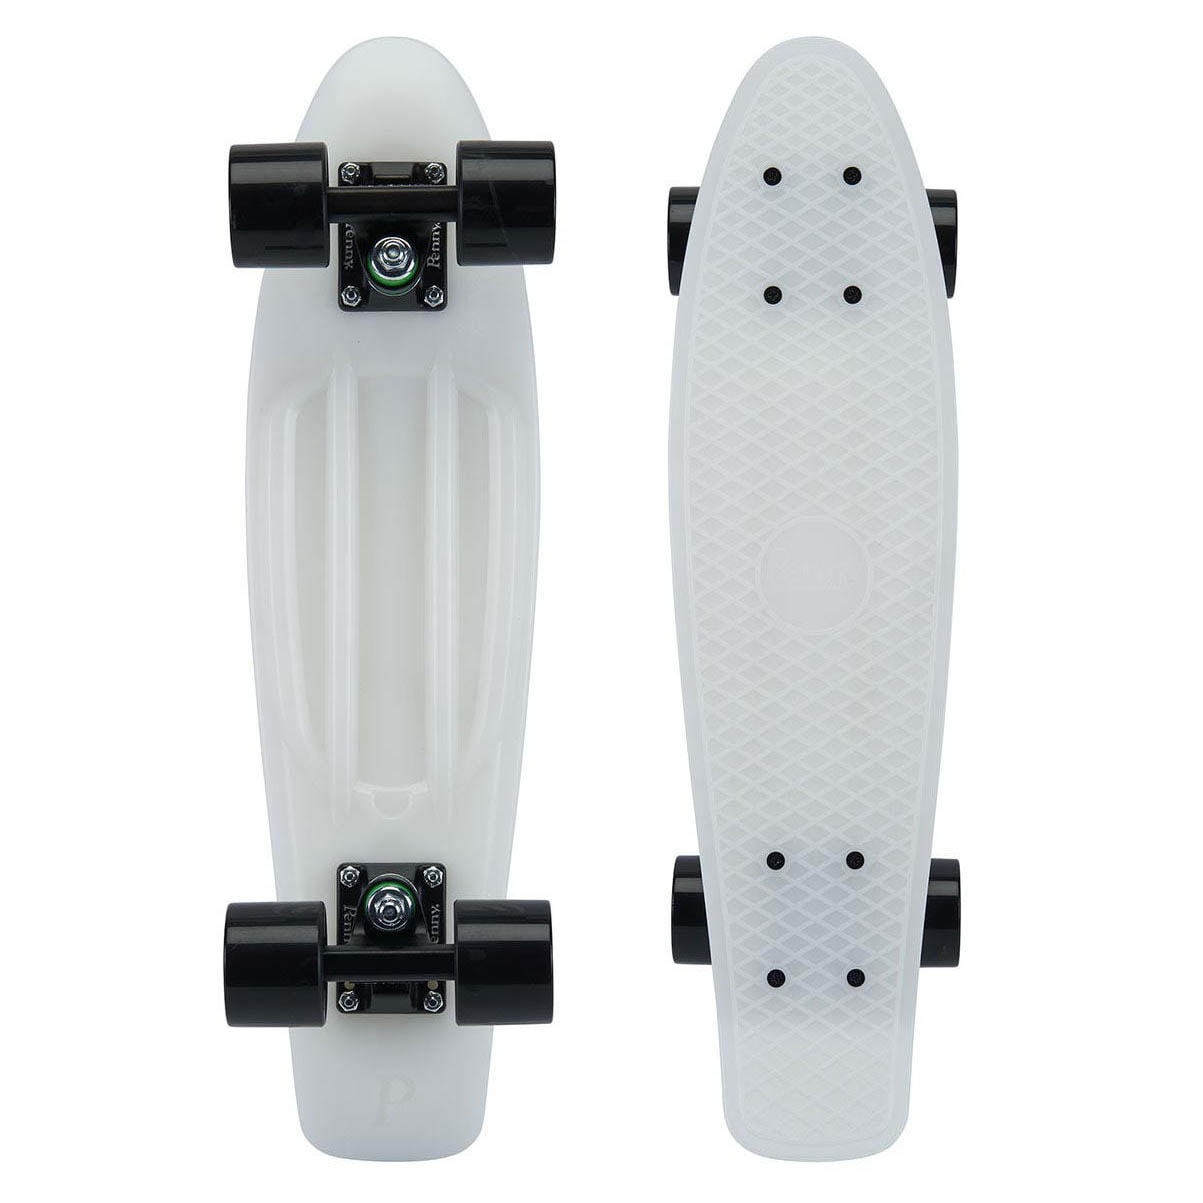 LED skateboard pennyboard 22" completamente Funboard longboard kick Board Cruiser azul 